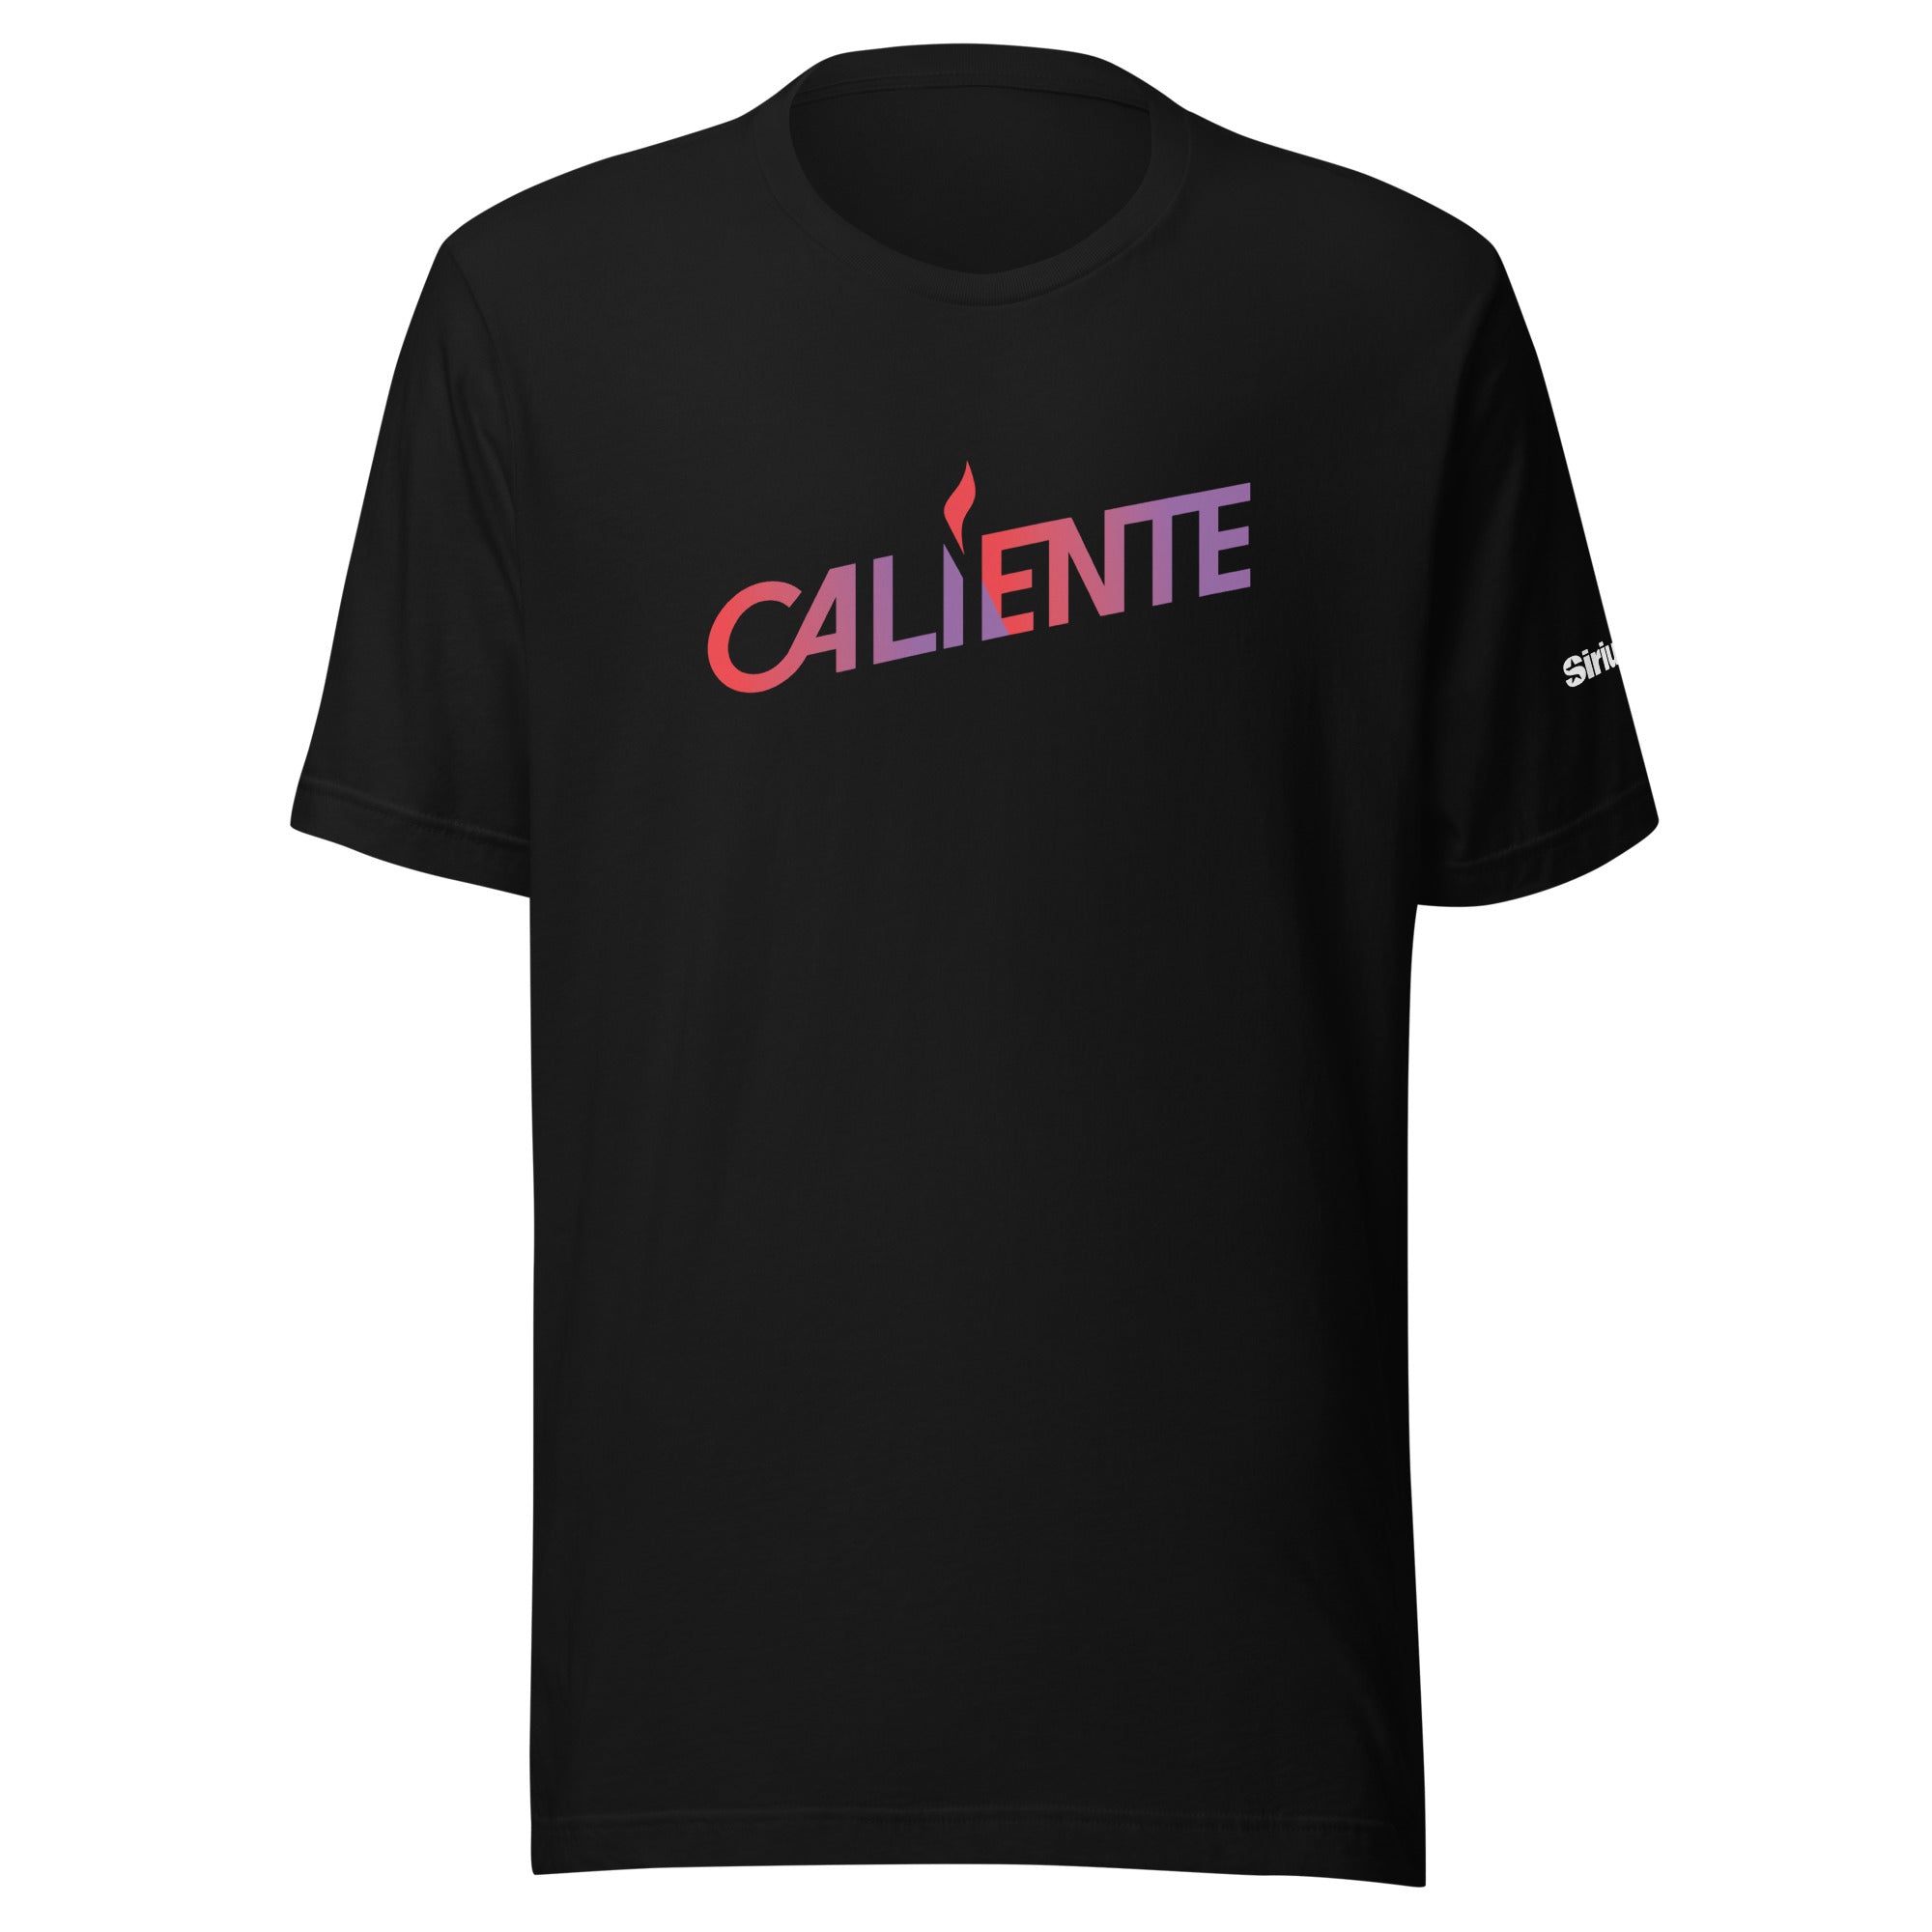 Caliente: T-shirt (Black)